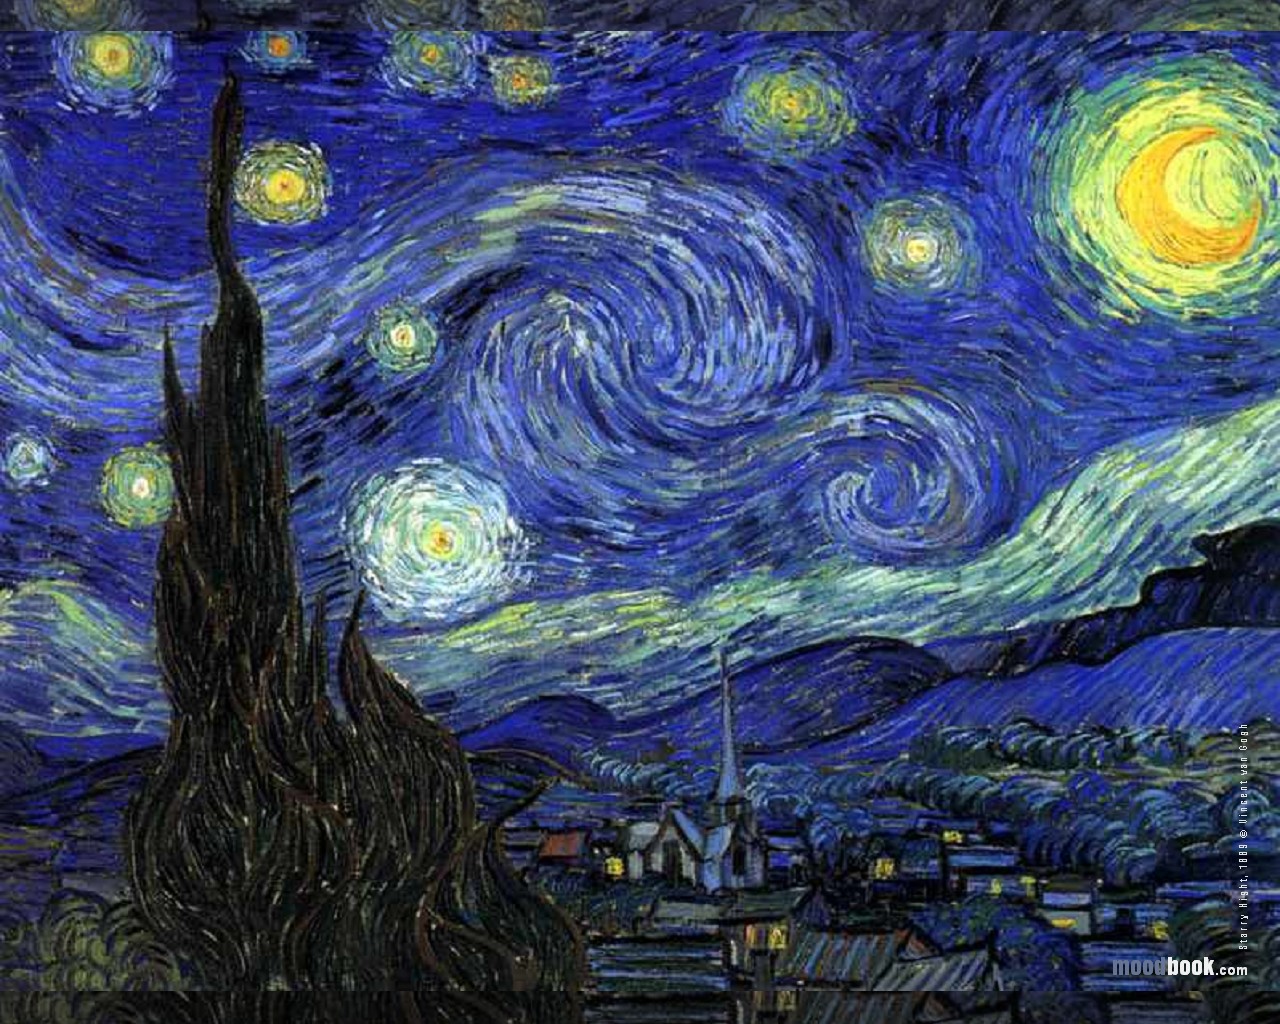 Vincent van gogh starry night wallpaper danasrhj.top